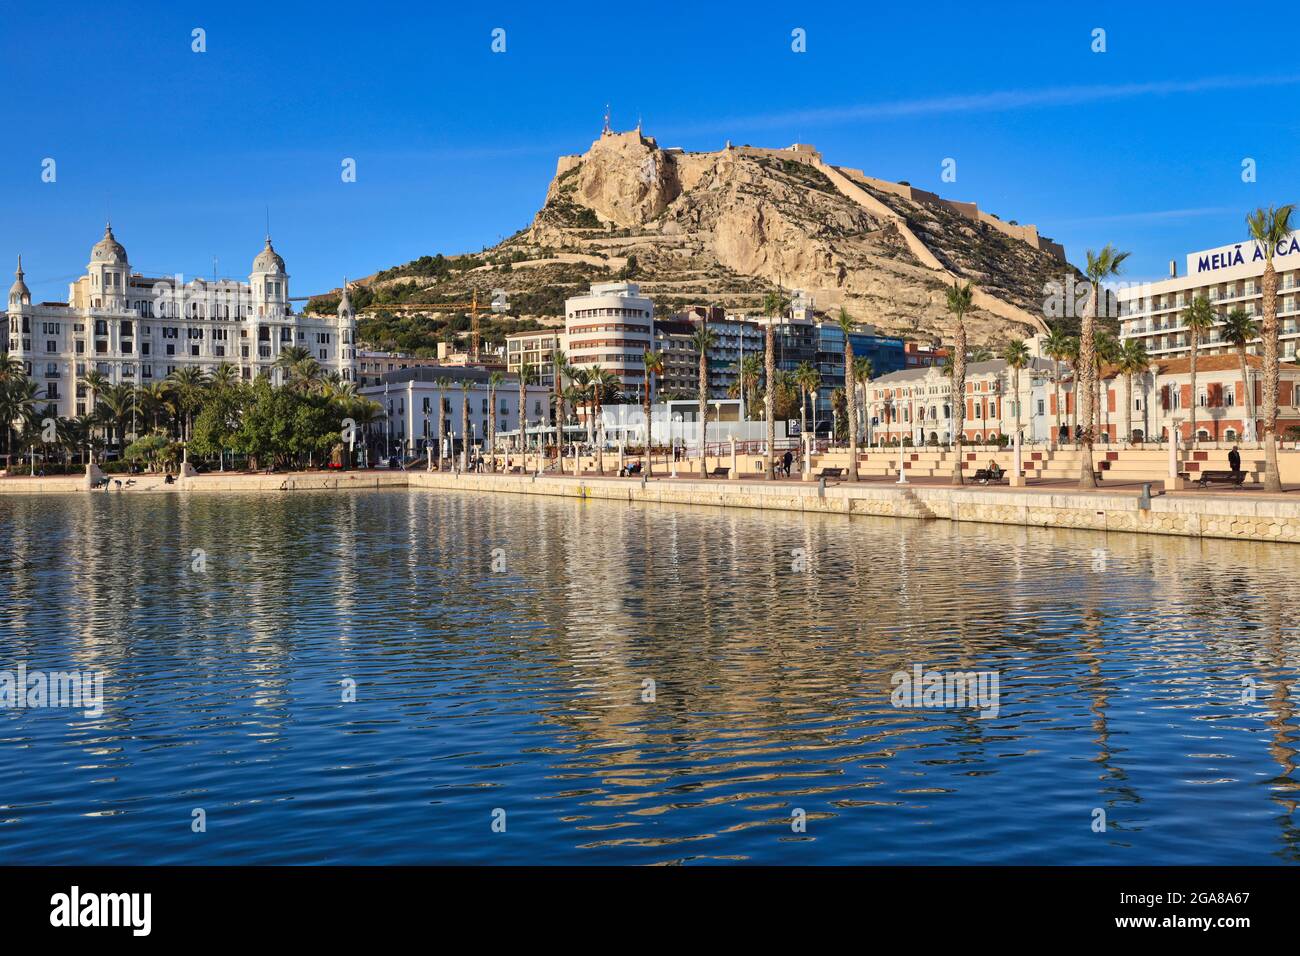 Die Burg von Santa Barbara hoch oben auf einem Vorgebirge mit Blick auf die Stadt Alicante, Spanien, mit der Promenade und dem Wasser im Vordergrund Stockfoto